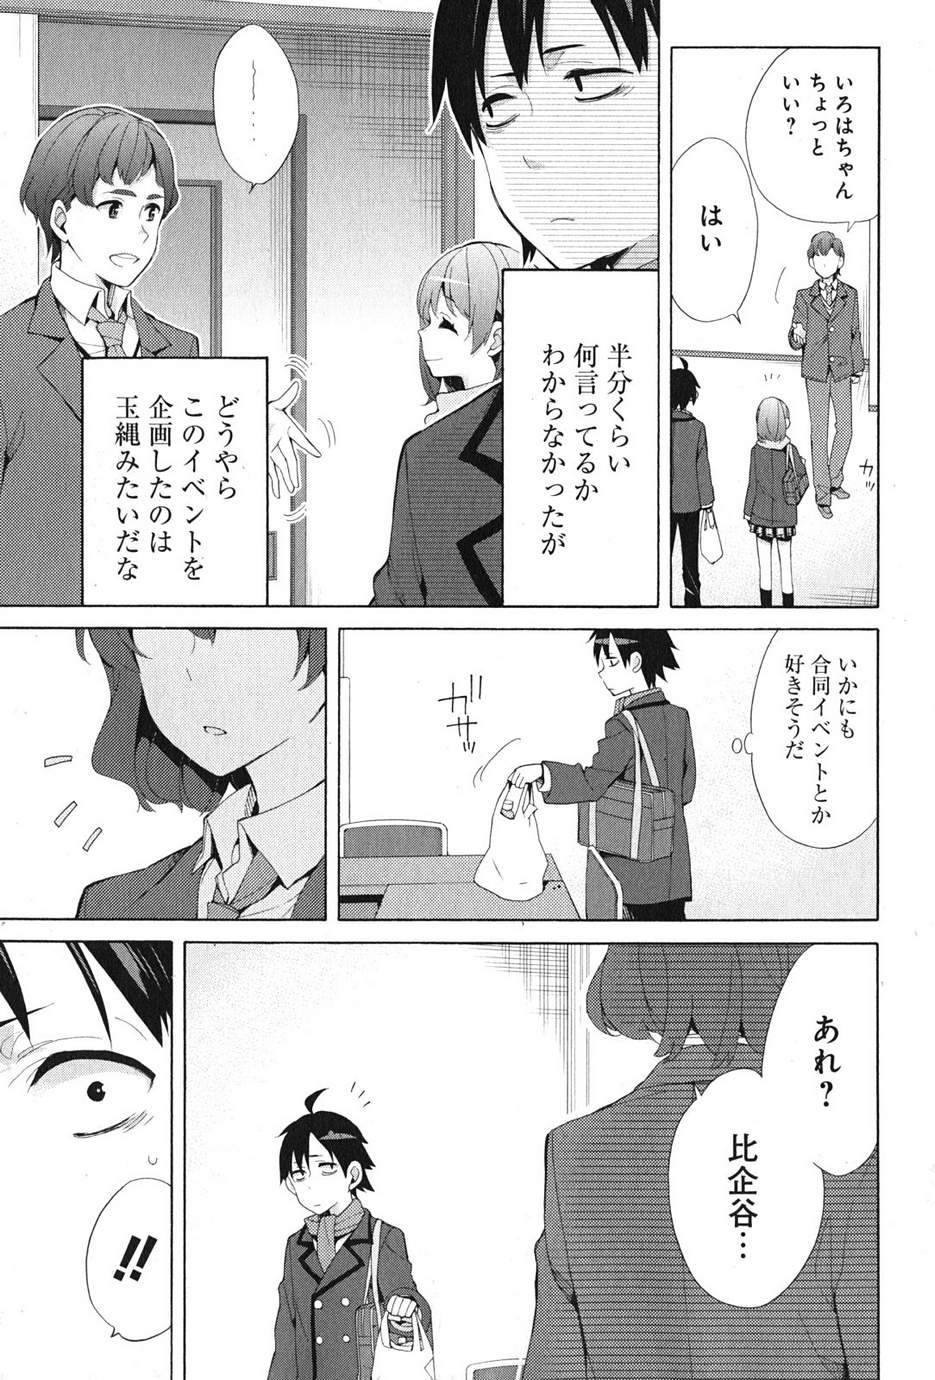 Yahari Ore no Seishun Rabukome wa Machigatte Iru. - Monologue - Chapter 36 - Page 3